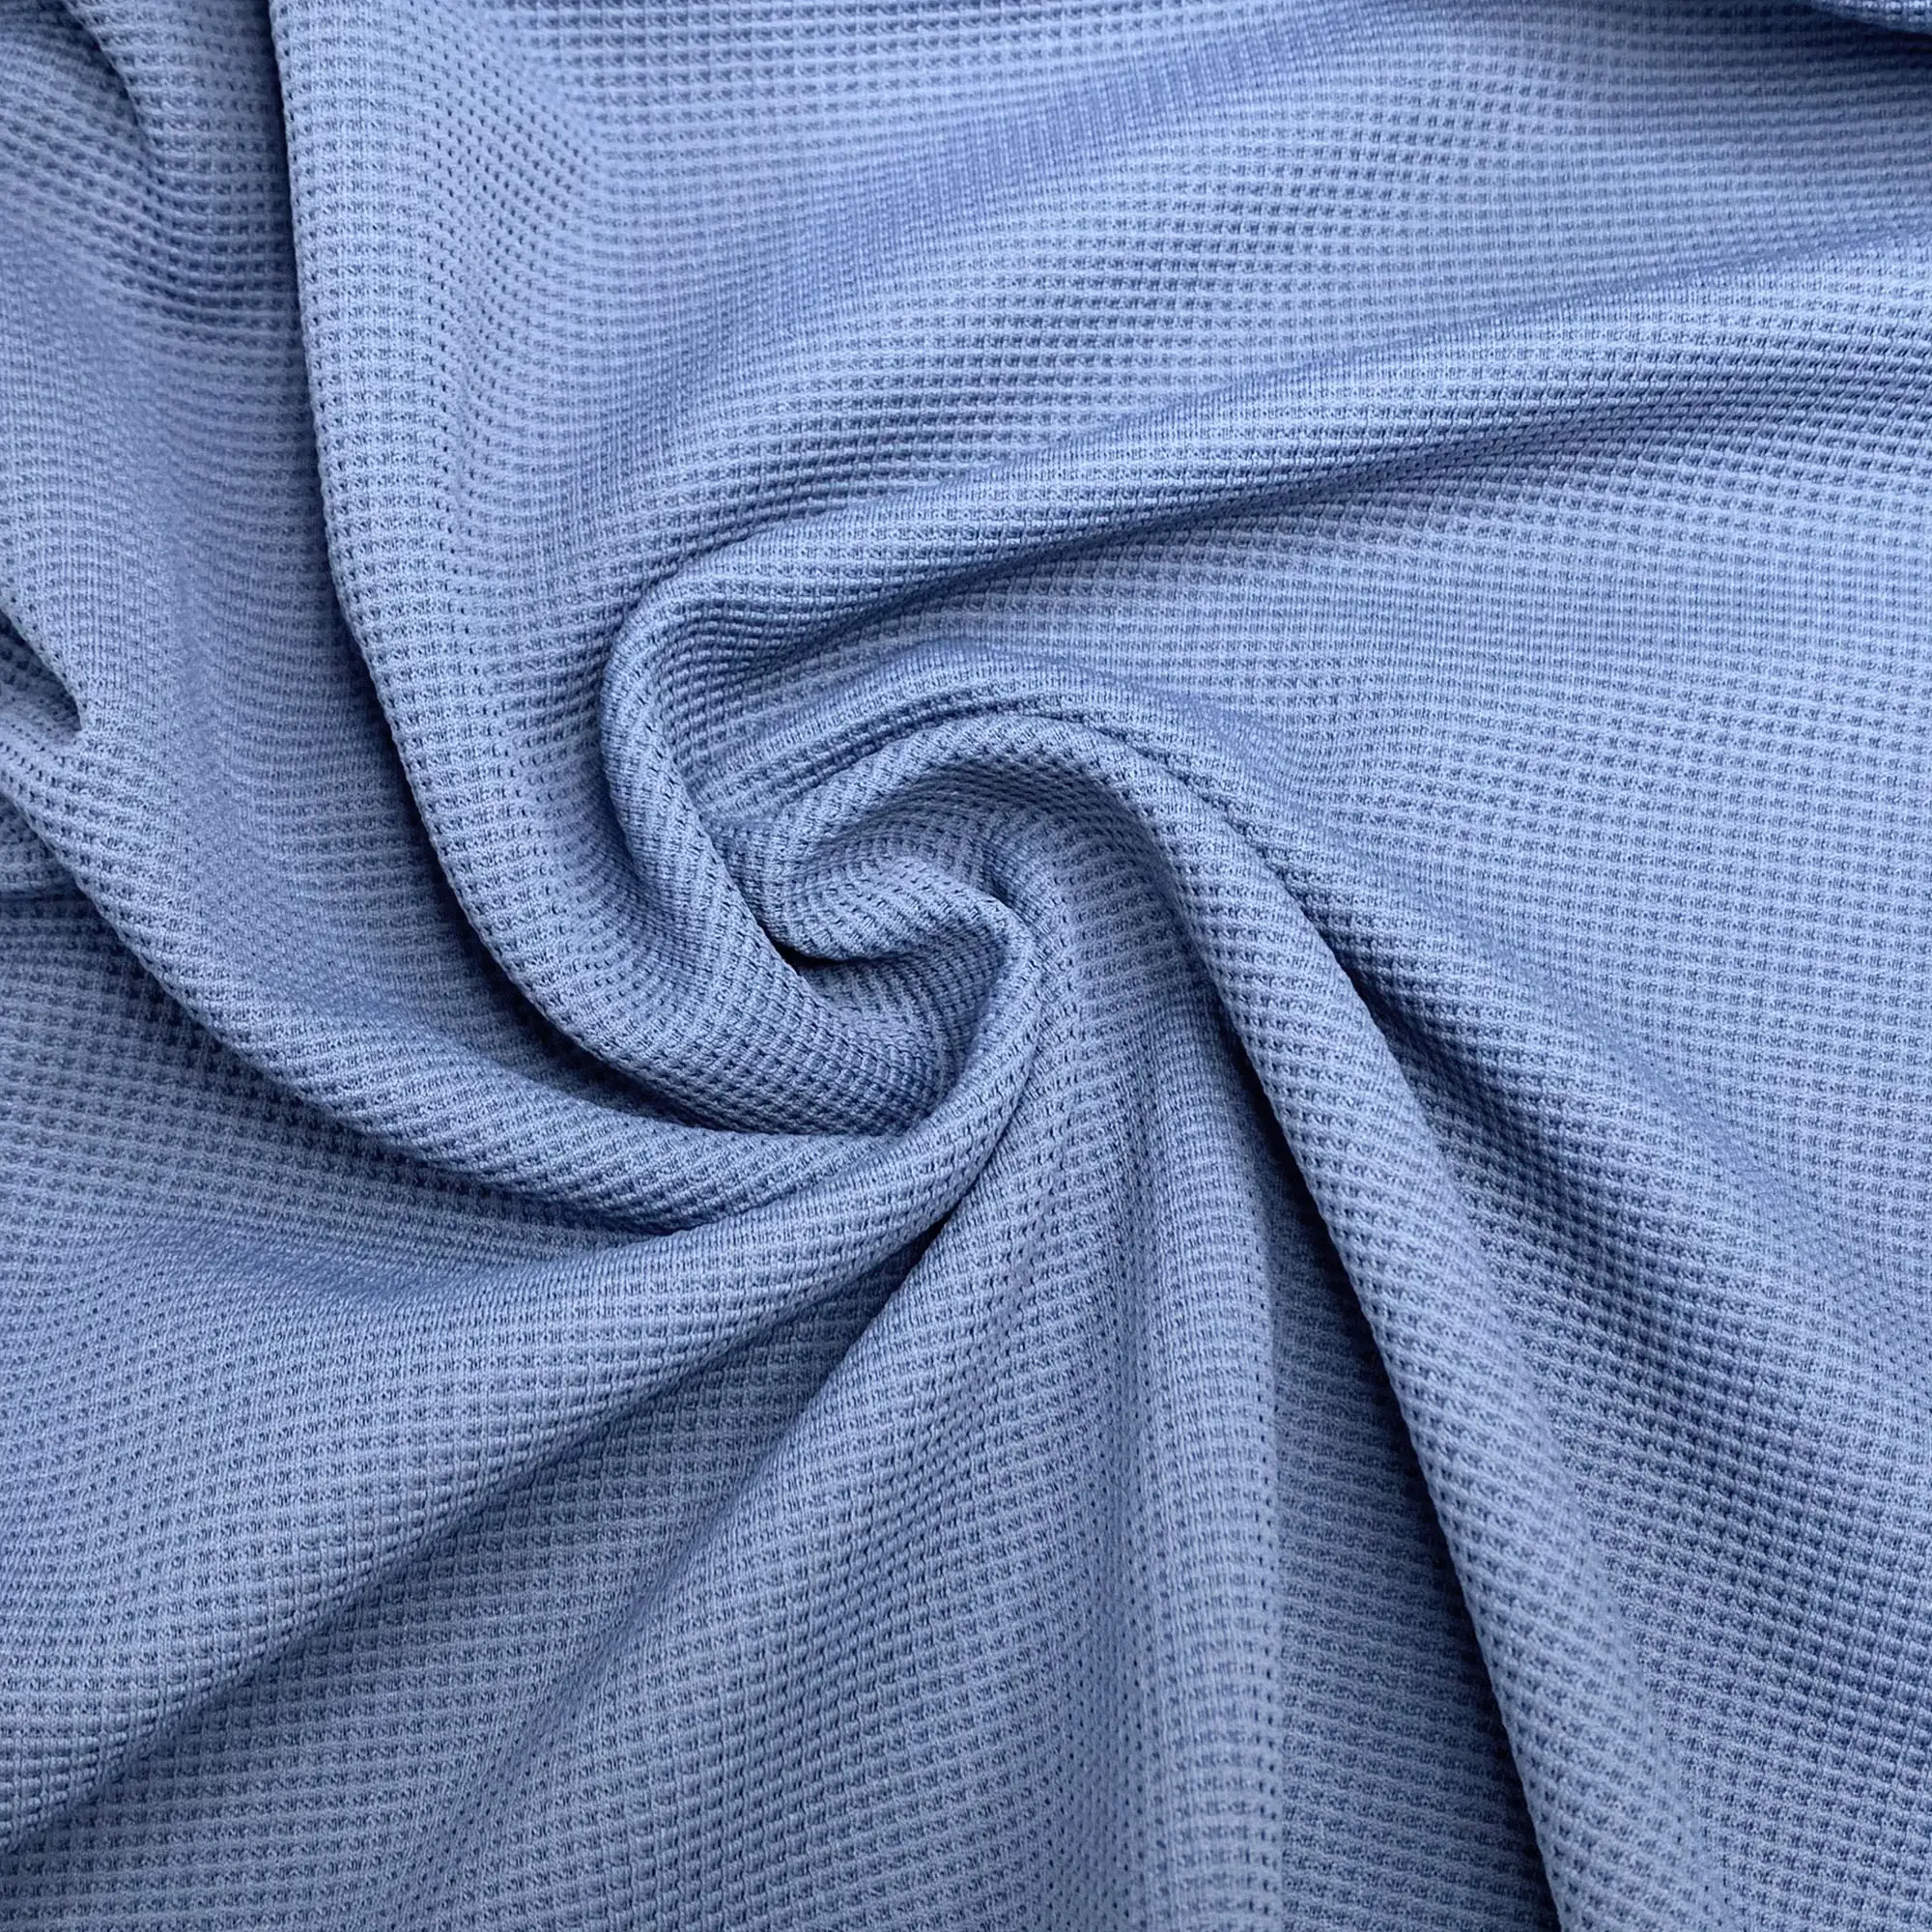 Hoodies gömlek için örme jakarlı saf polyester taklit pamuk waffle kumaş